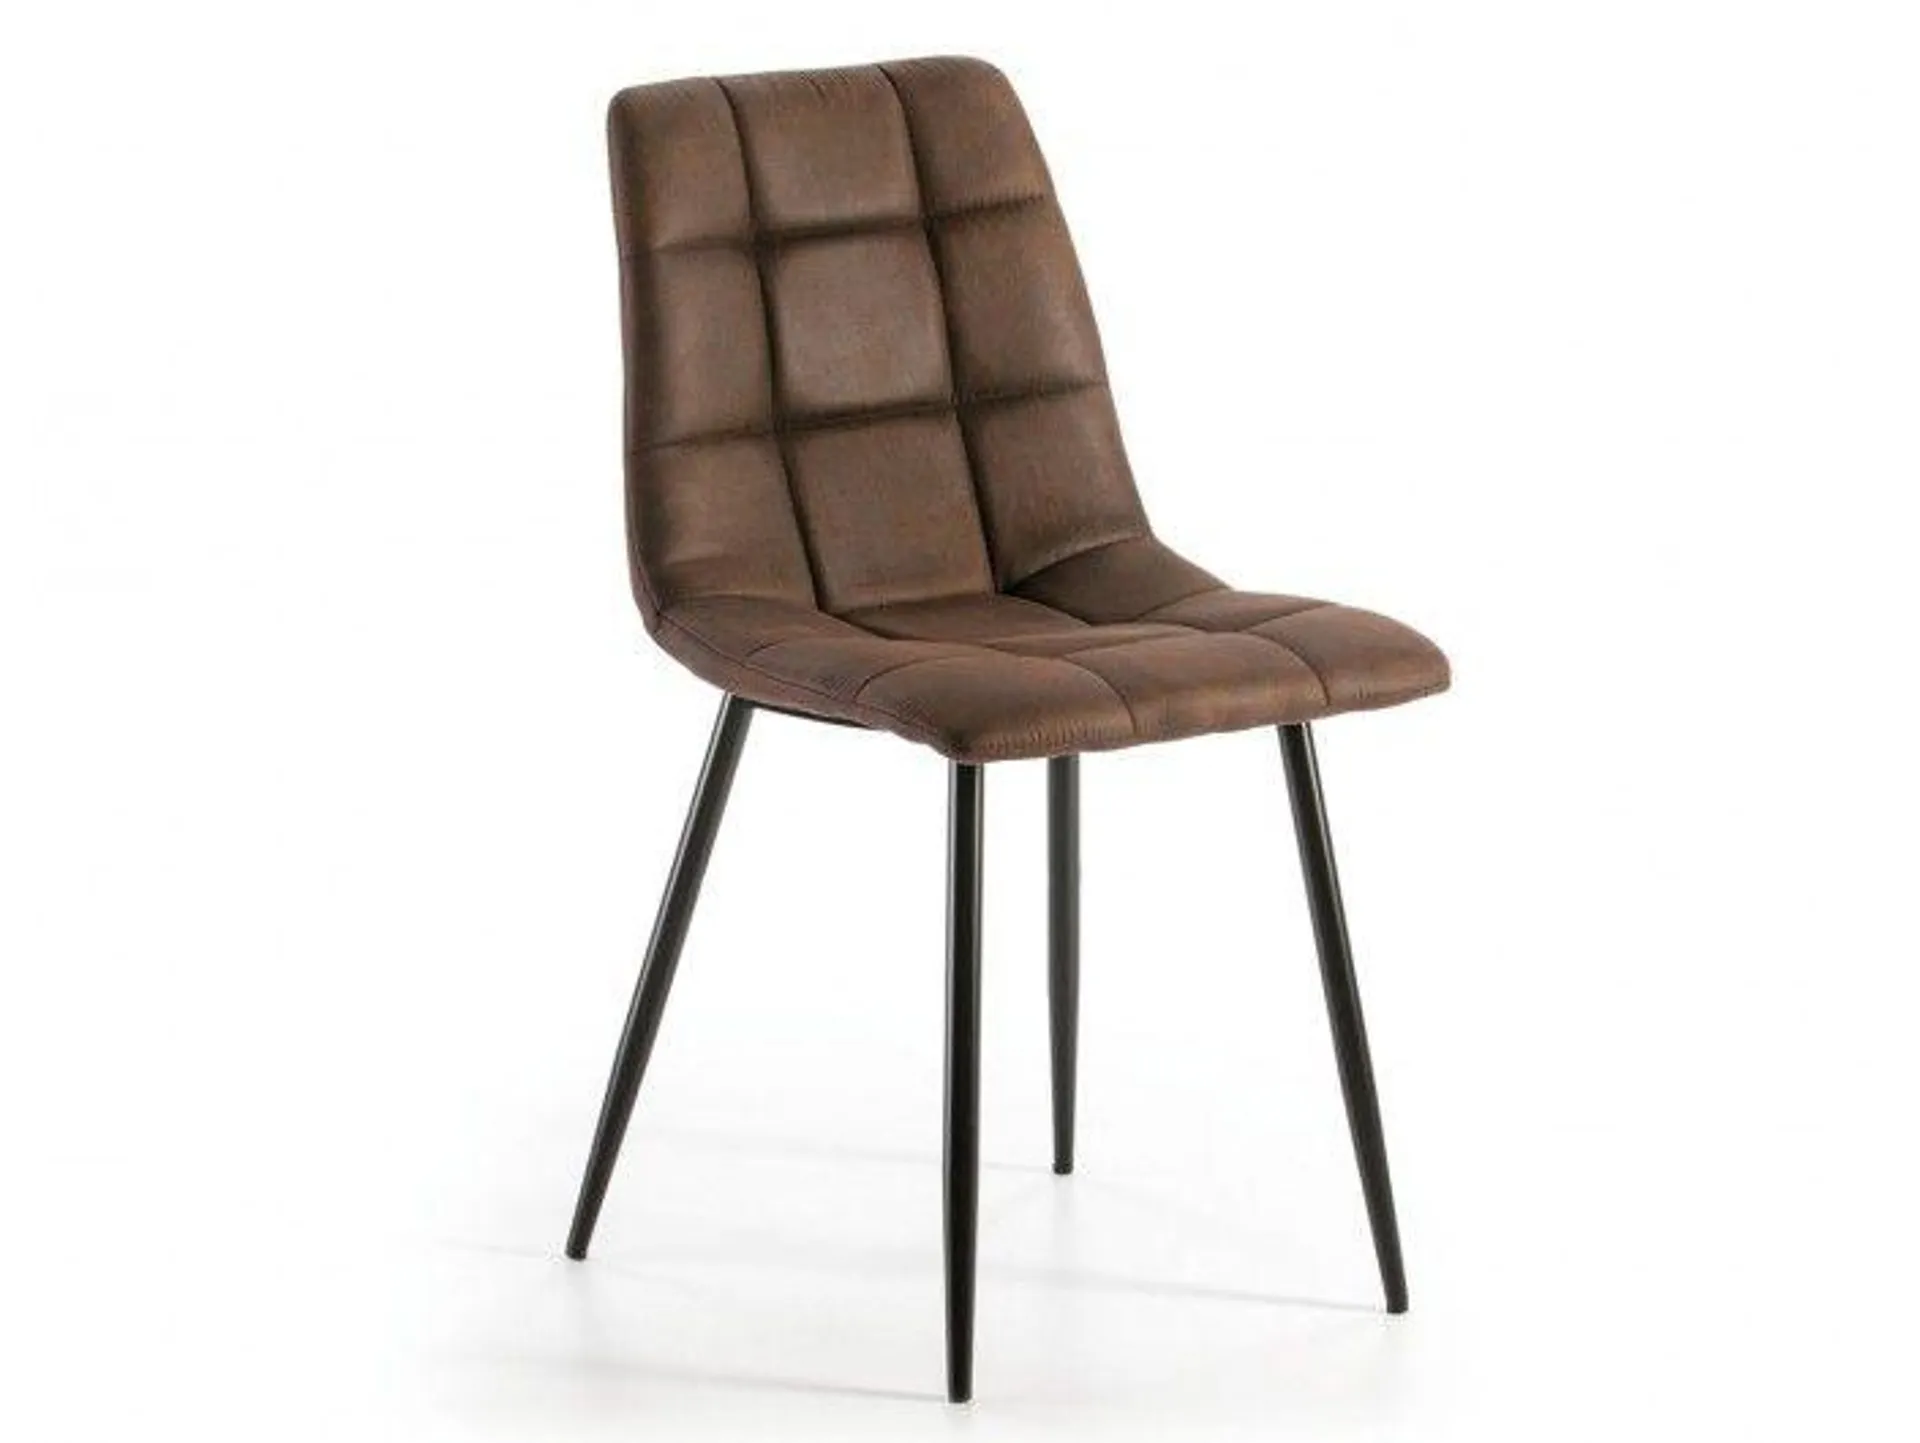 Pack 2 sillas de comedor tapizado marrón y patas metálicas